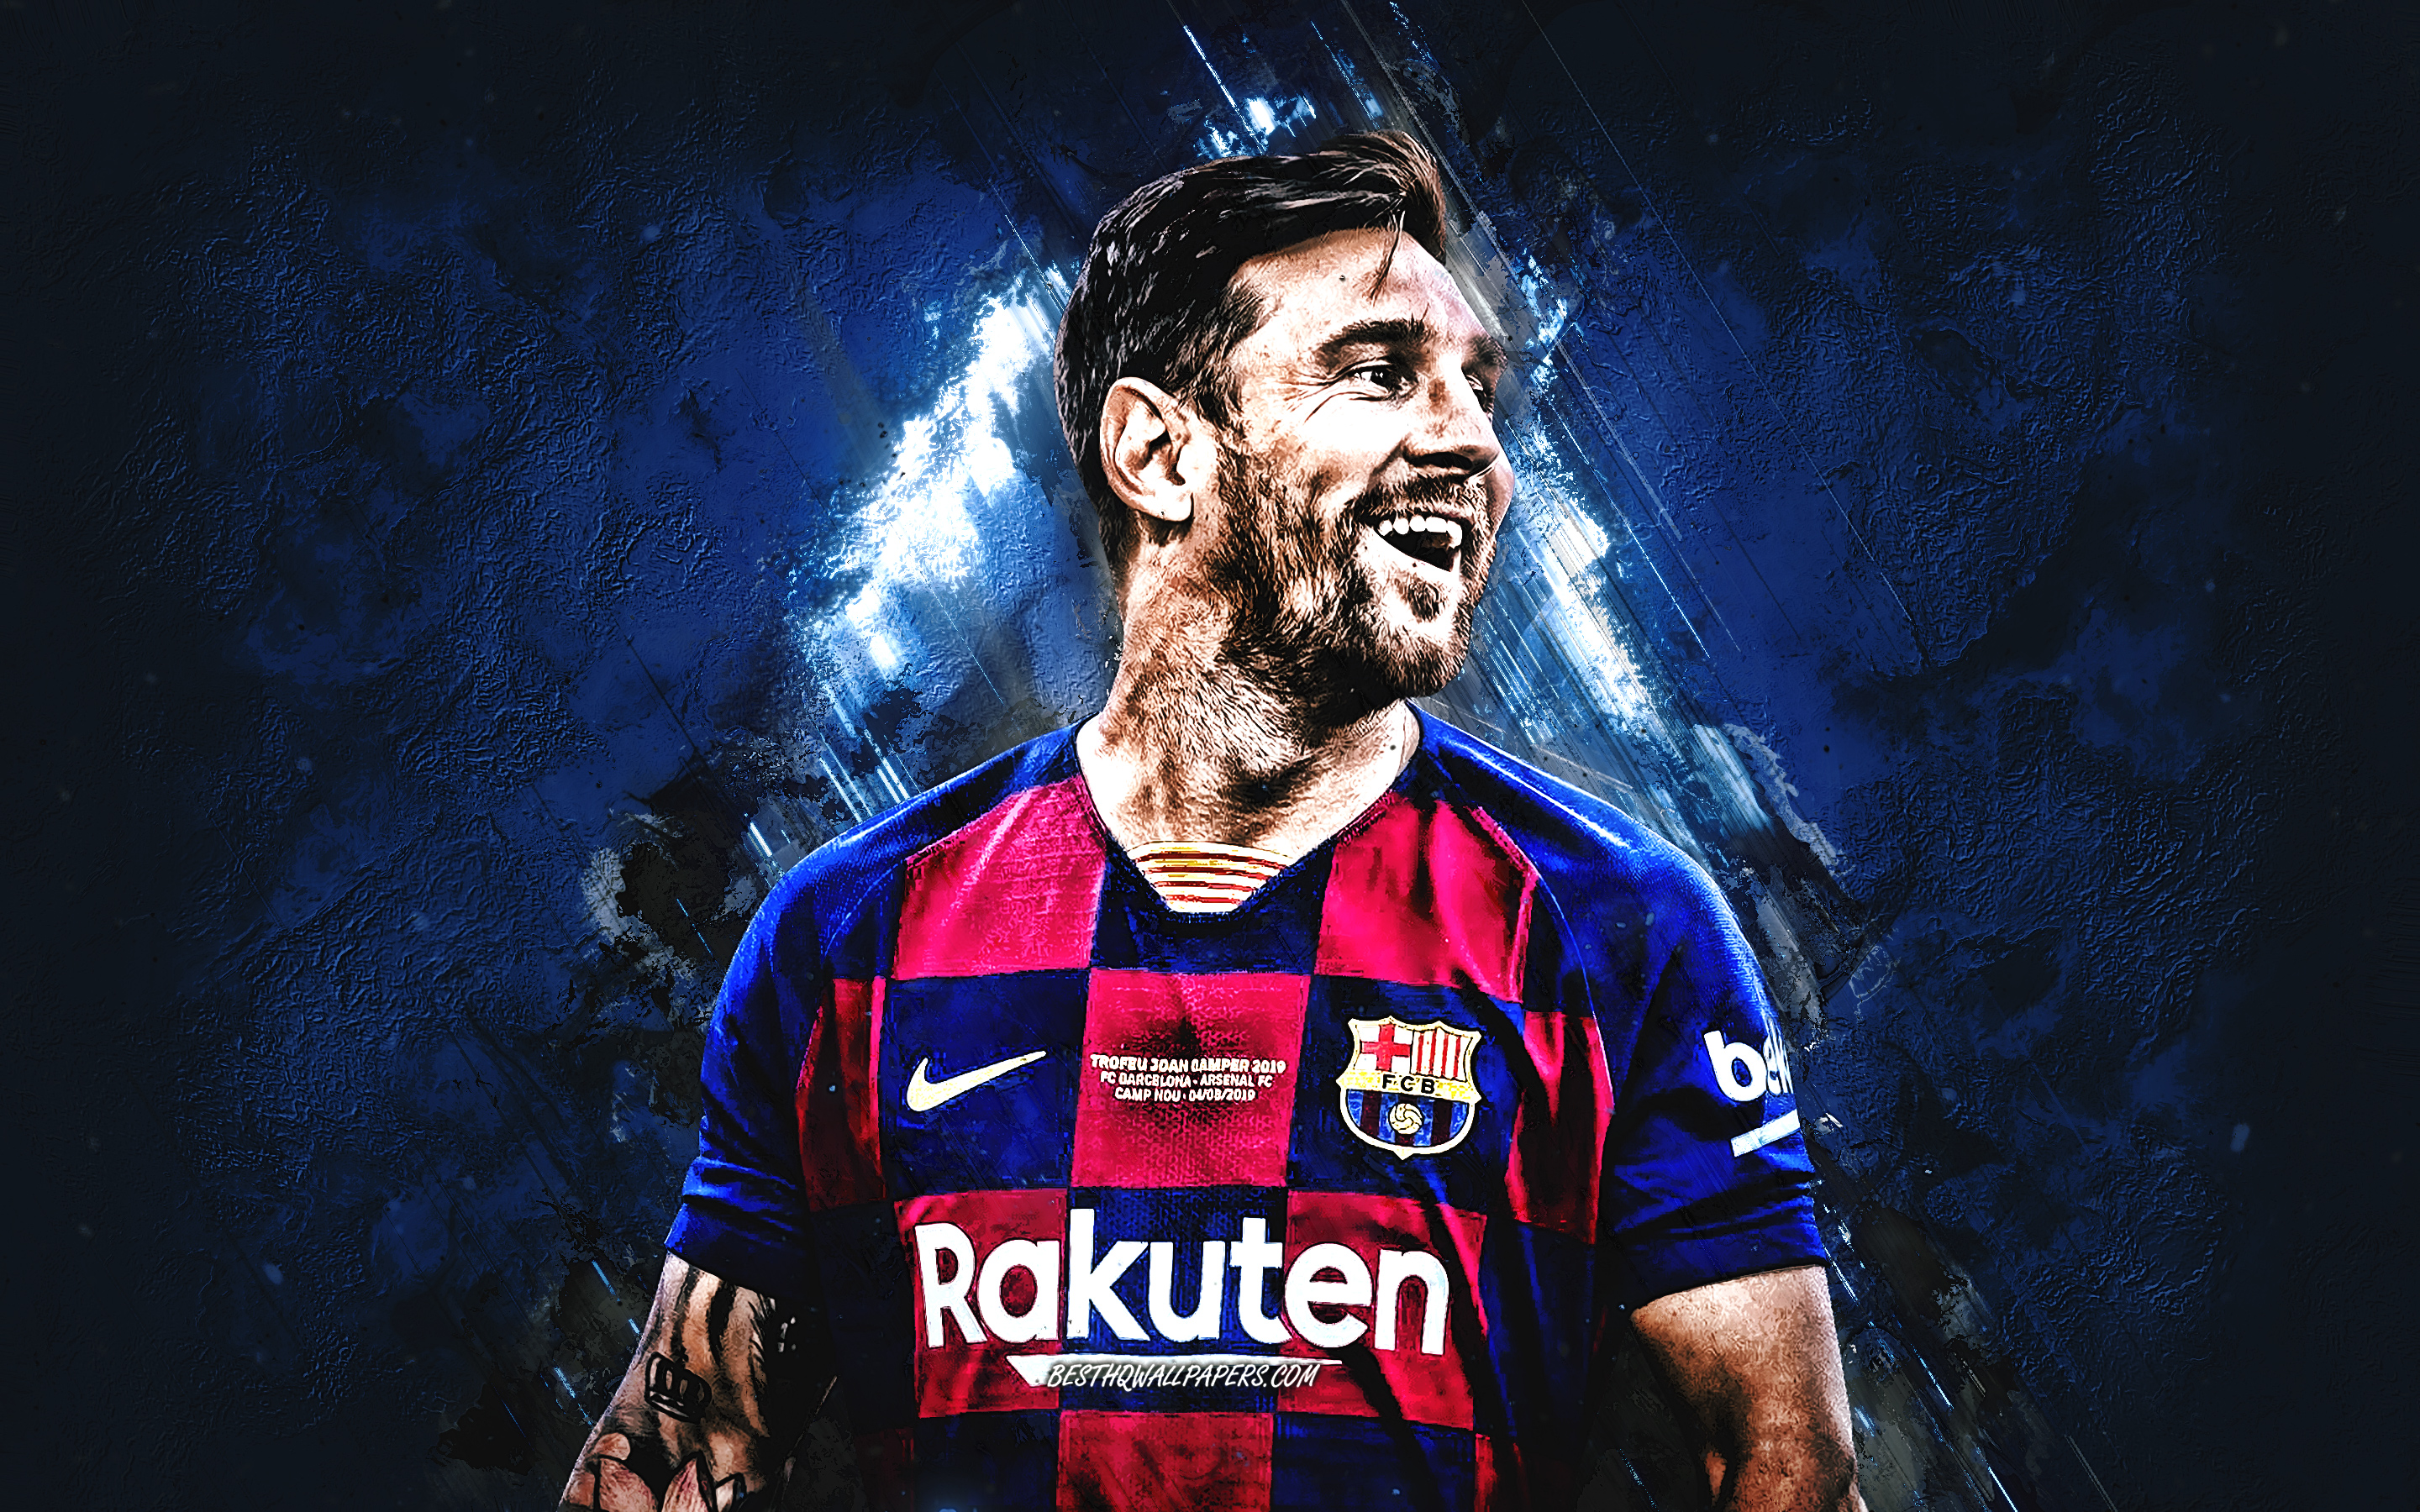 Kho hình nền bóng đá với hình ảnh Messi chơi bóng đầy uyển chuyển, rực rỡ sắc màu chỉ để phục vụ người hâm mộ bóng đá. Với những hình ảnh tuyệt đẹp này, bạn sẽ luôn cảm thấy gần gũi với sân cỏ và thần tượng của mình.